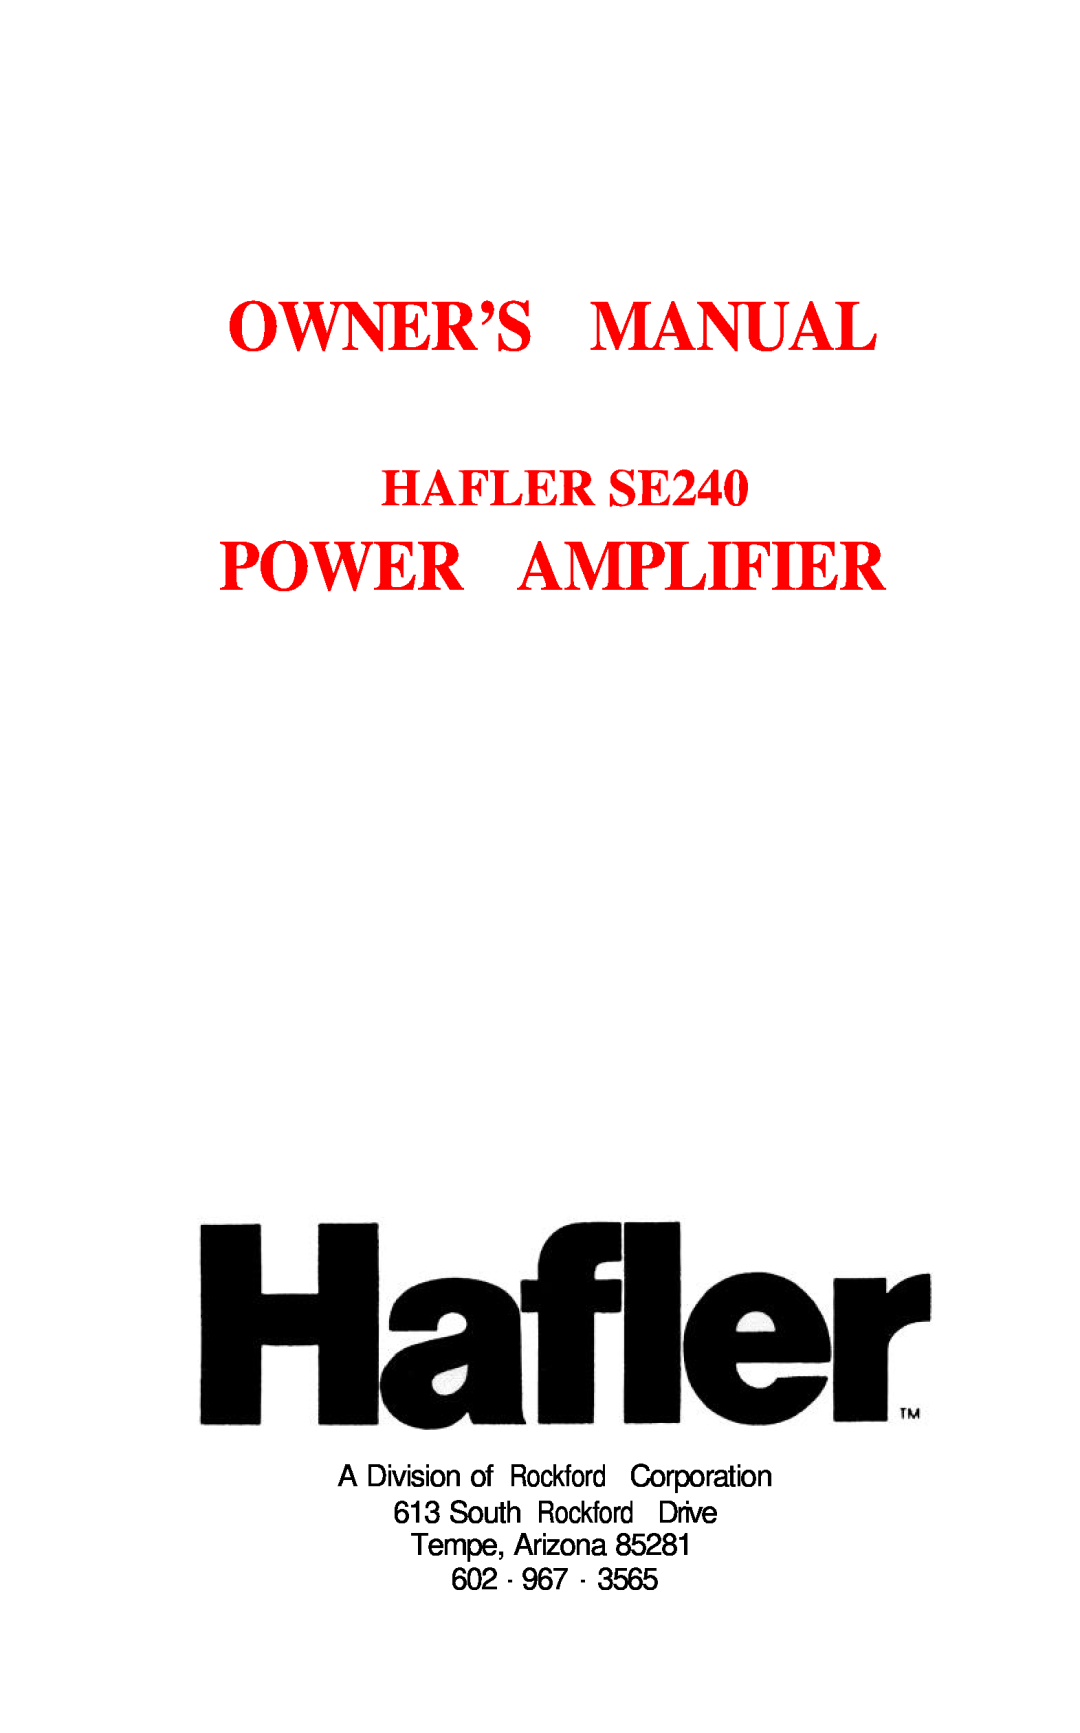 Hafler owner manual Power Amplifier, HAFLER SE240 